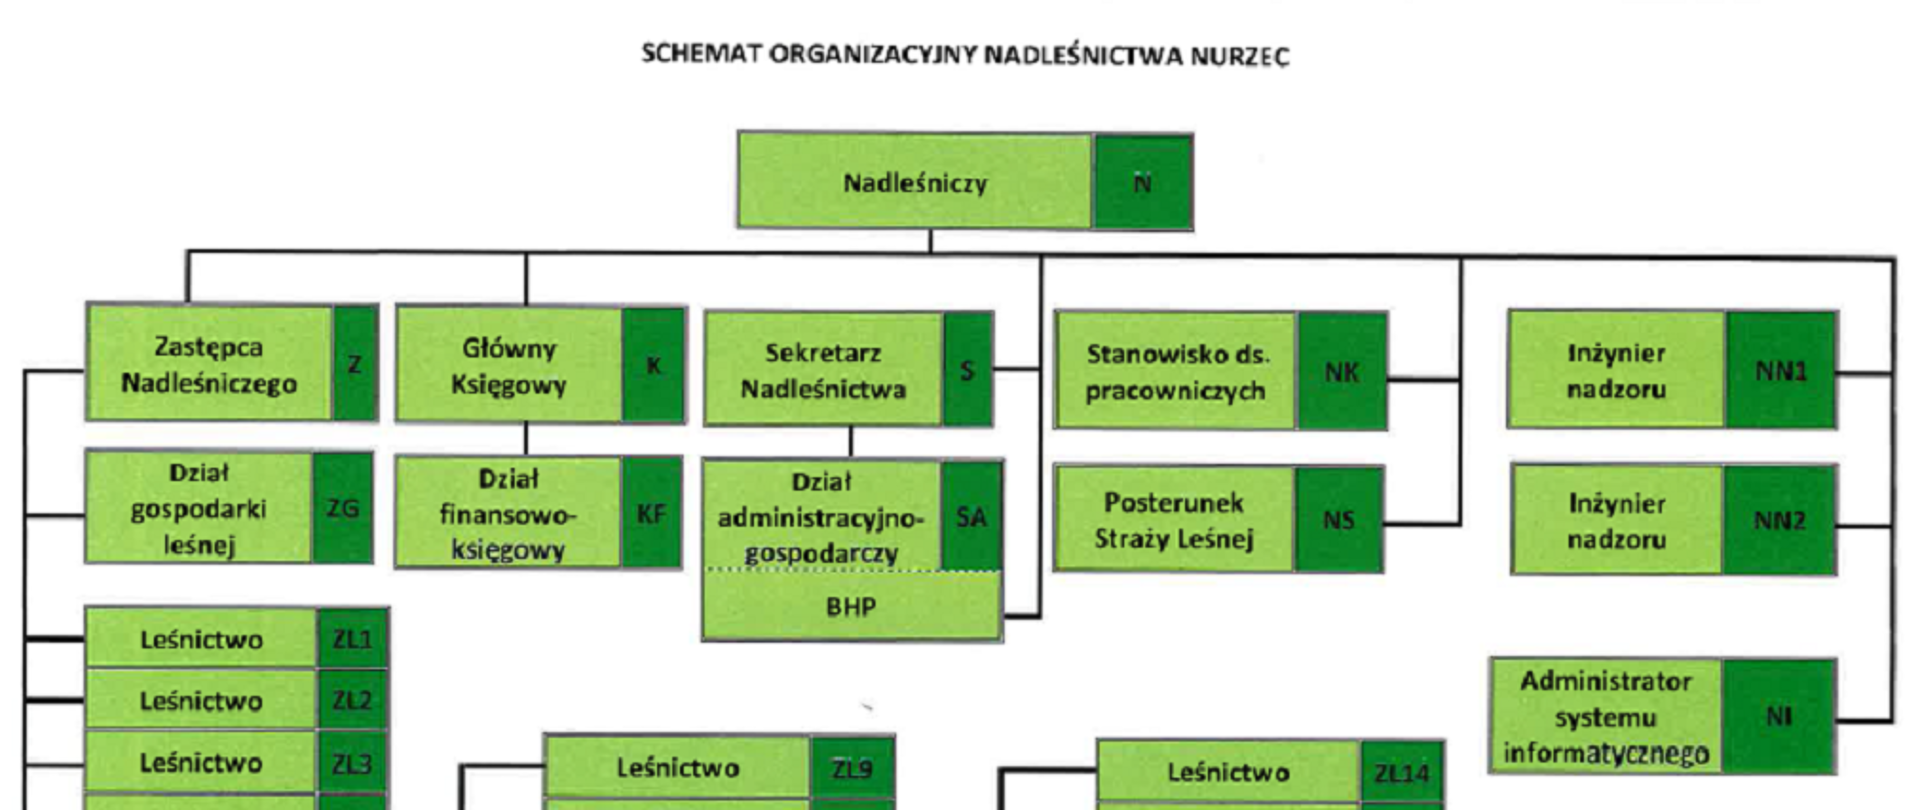 Schemat organizacyjny Nadleśnictwa Nurzec